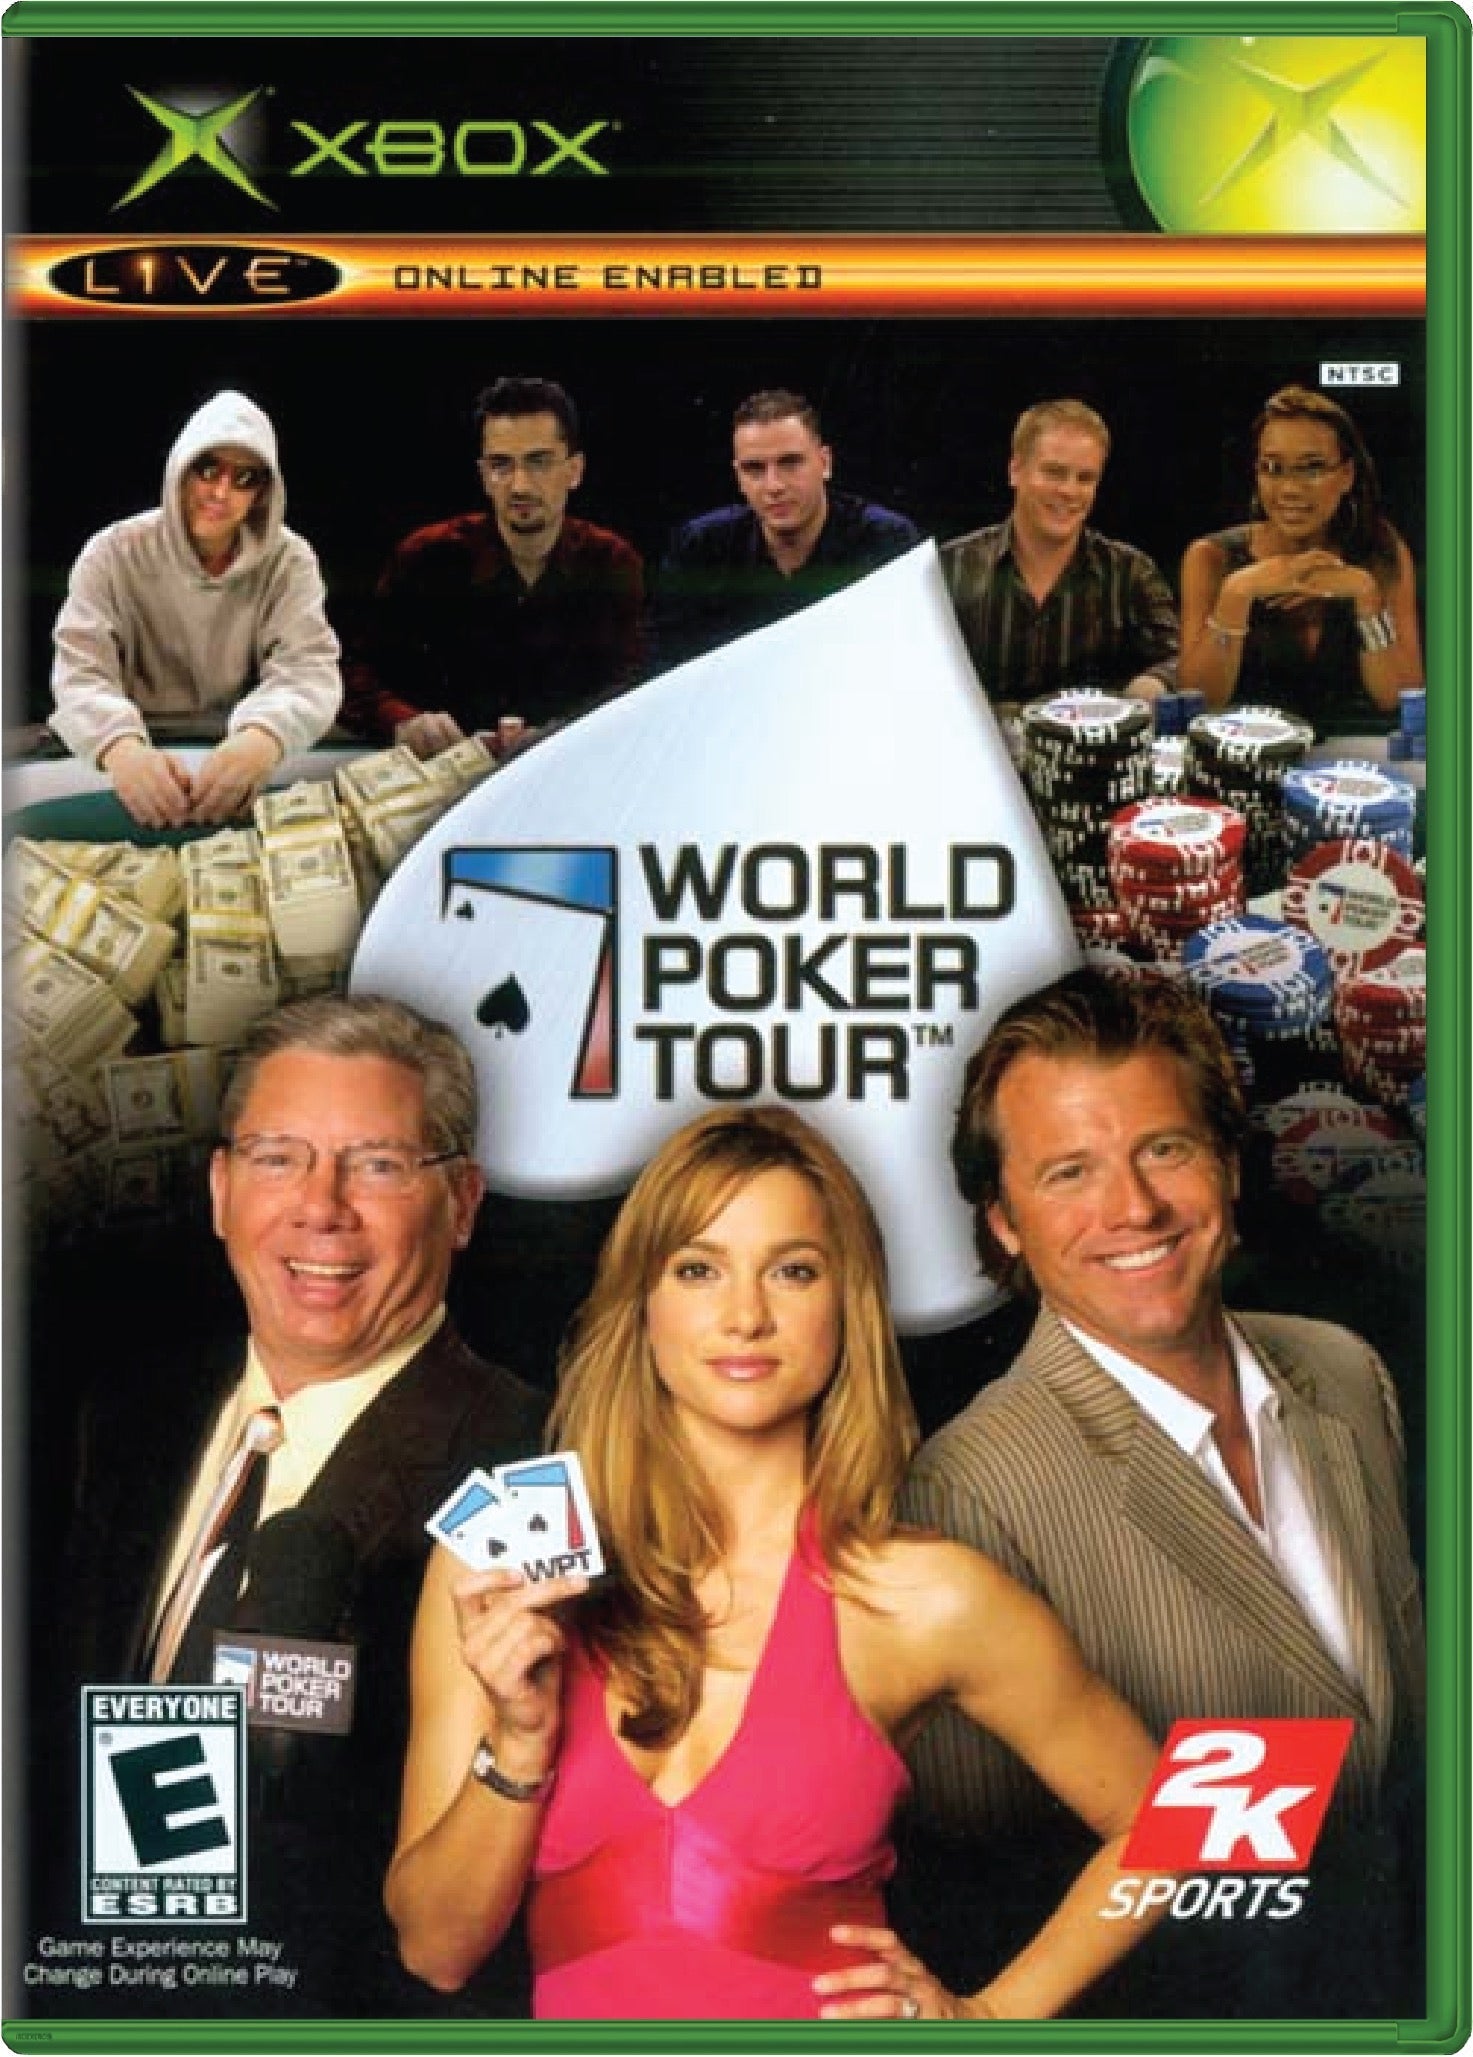 World Poker Tour Cover Art